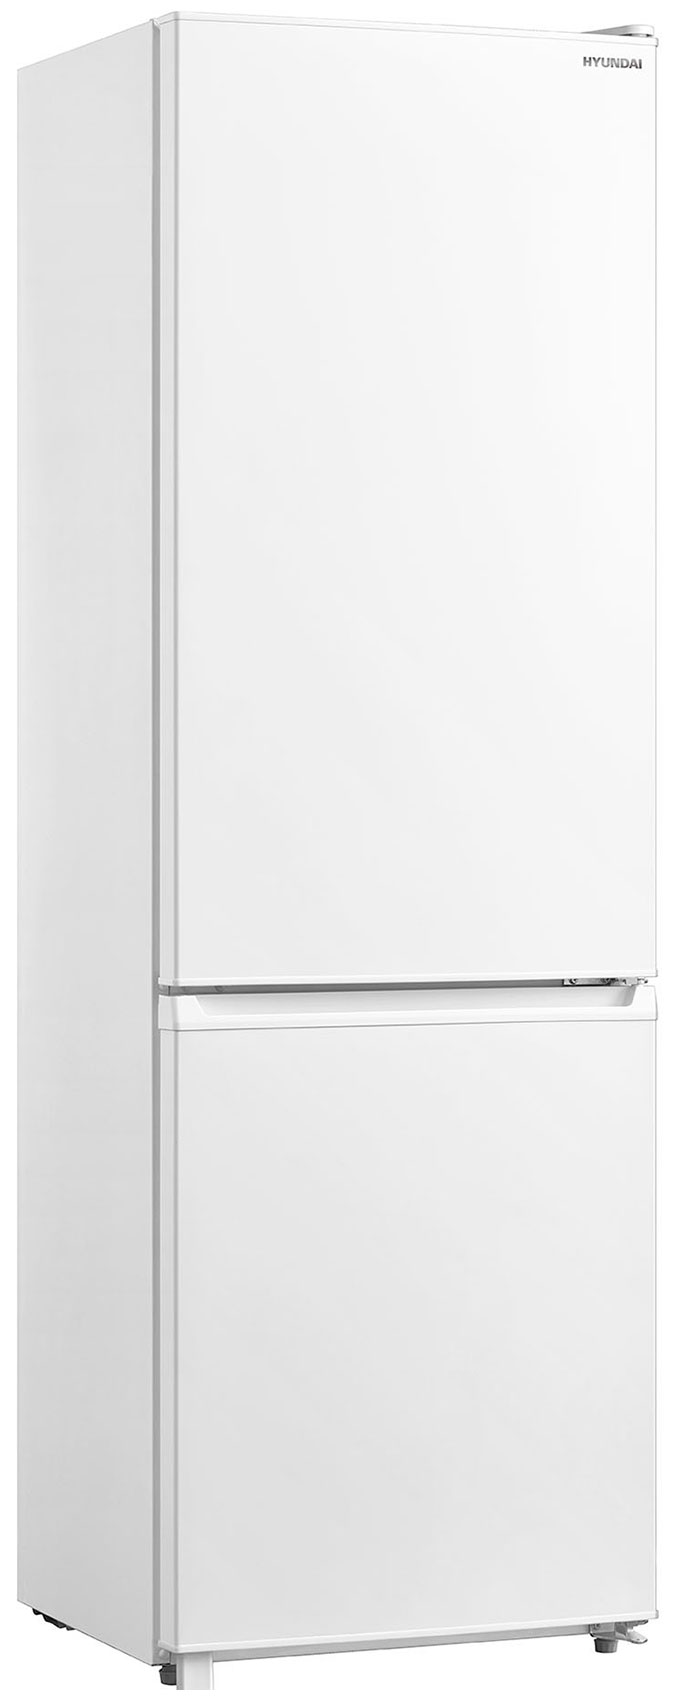 Двухкамерный холодильник Hyundai CC3091LWT белый холодильник hyundai cc3091lwt